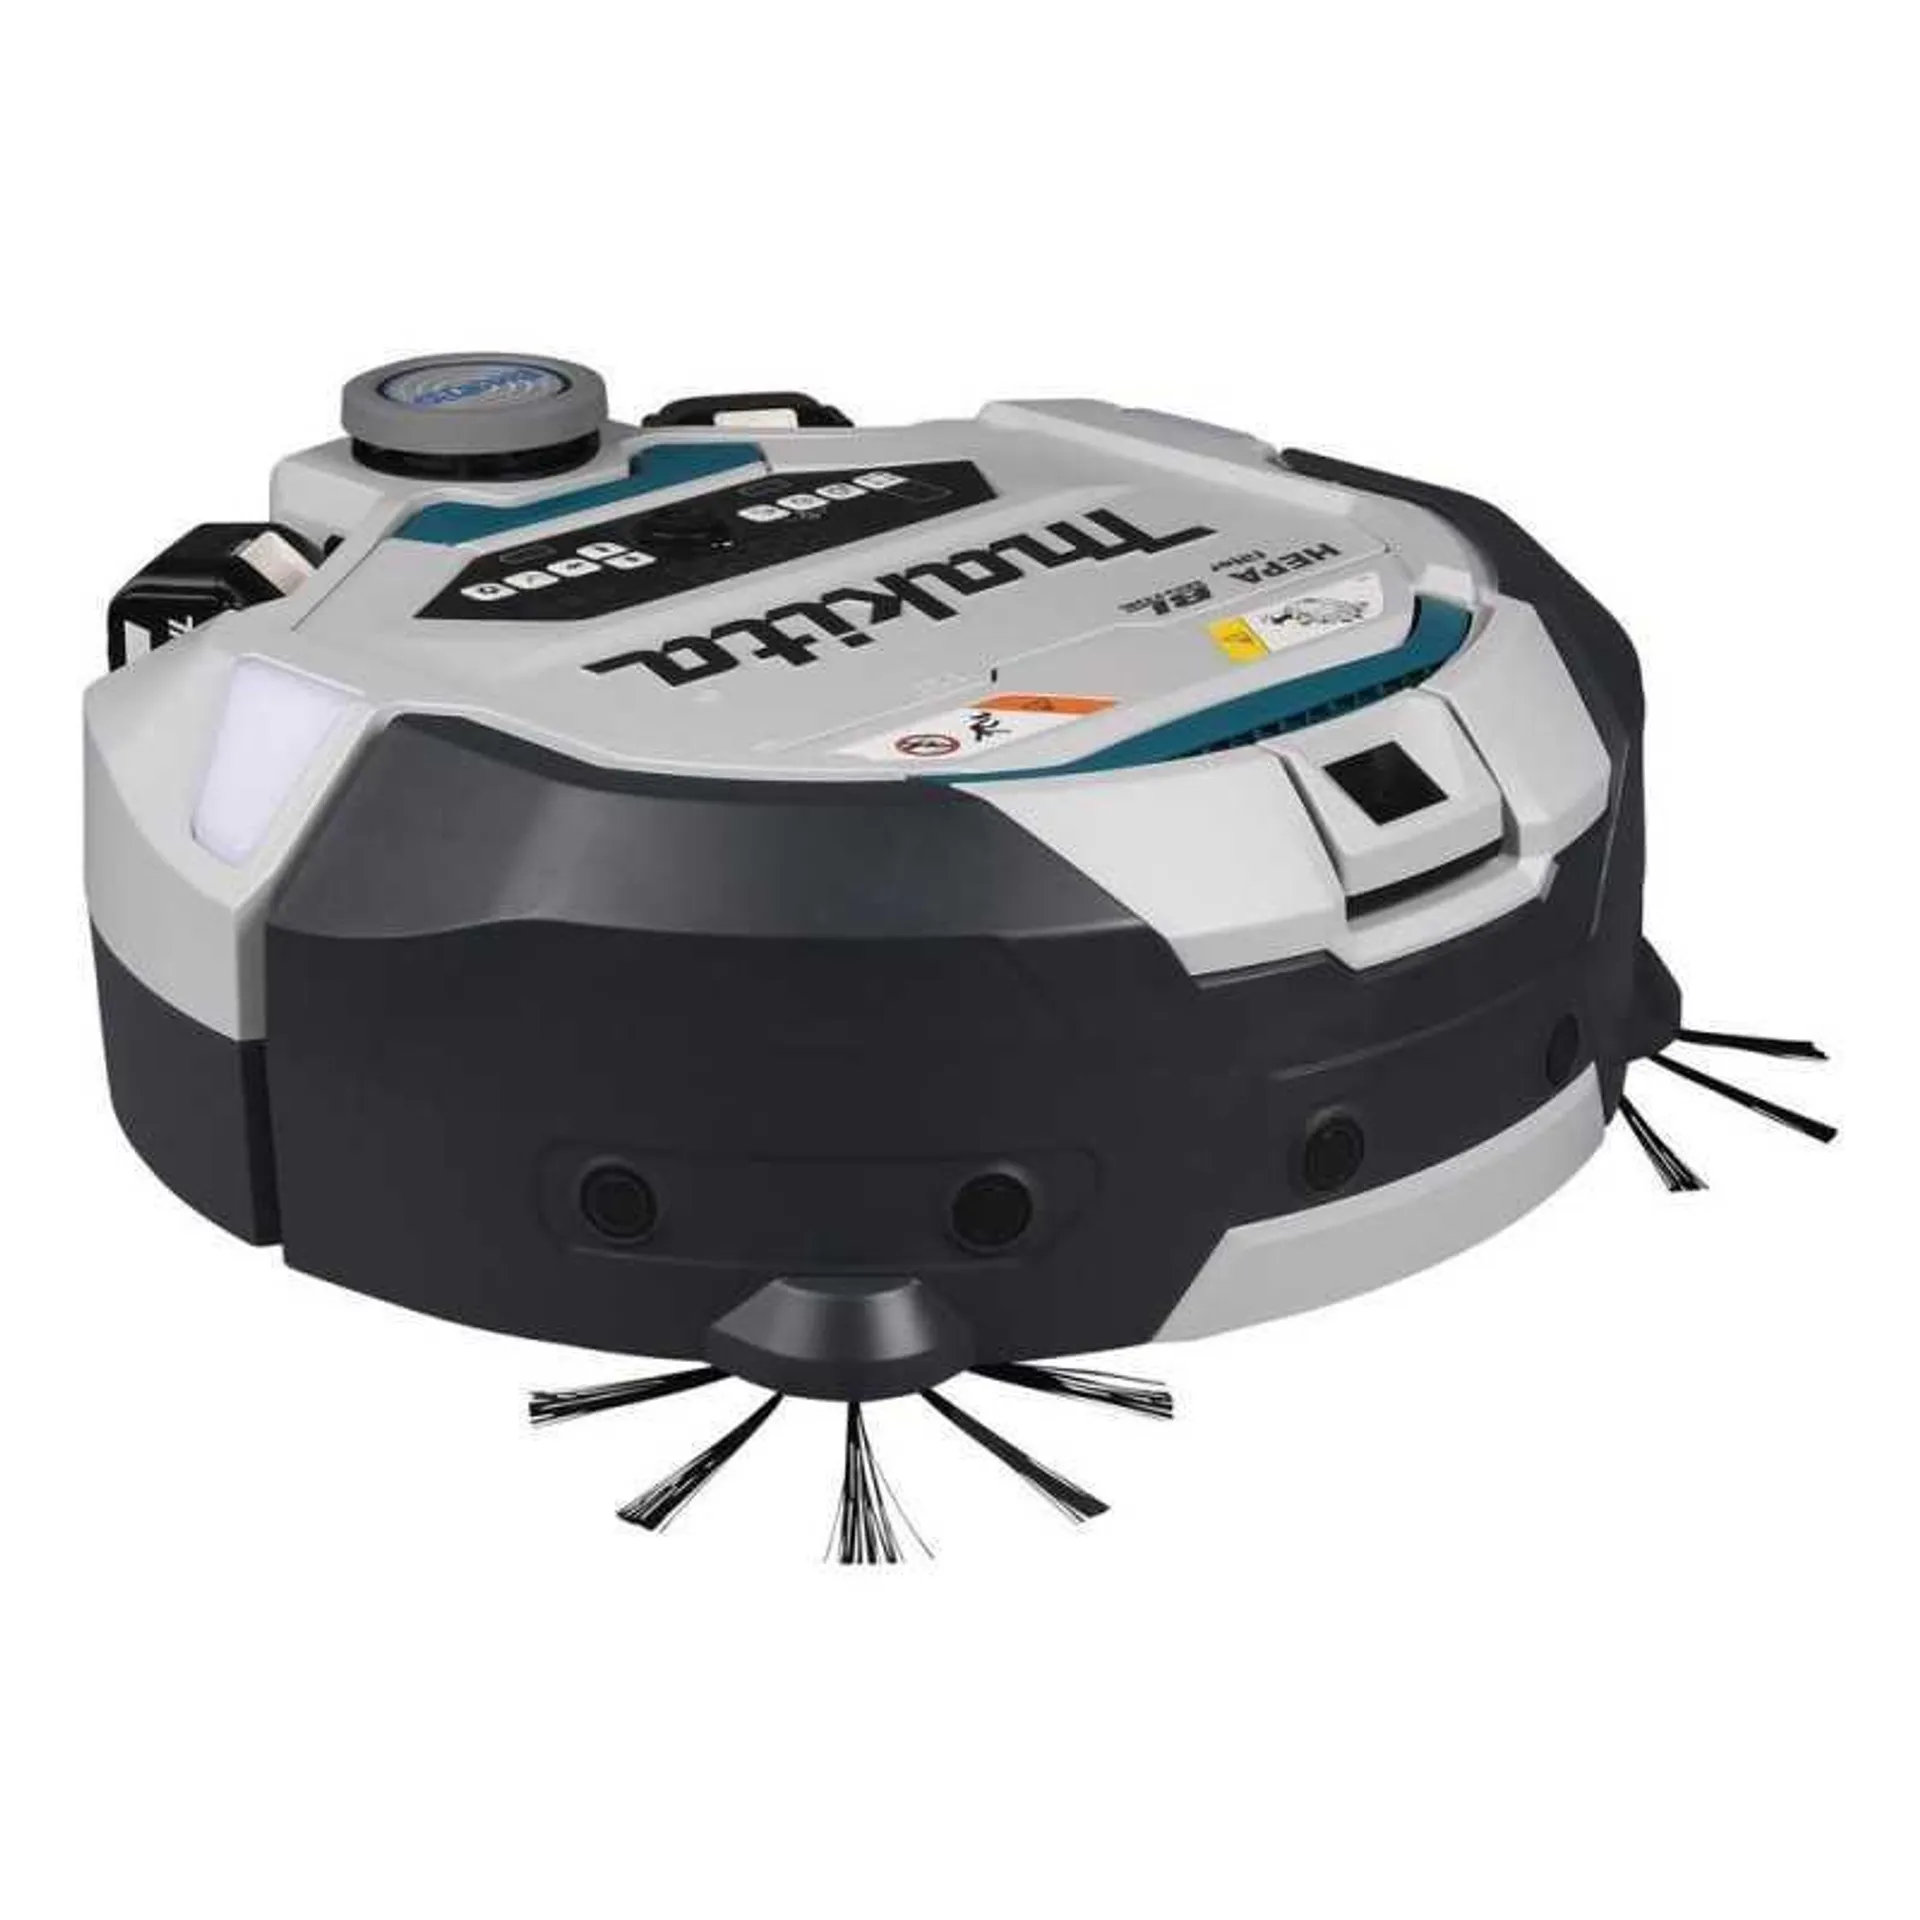 Aspiradora Robotica Inalambrica 3Lt Lxt